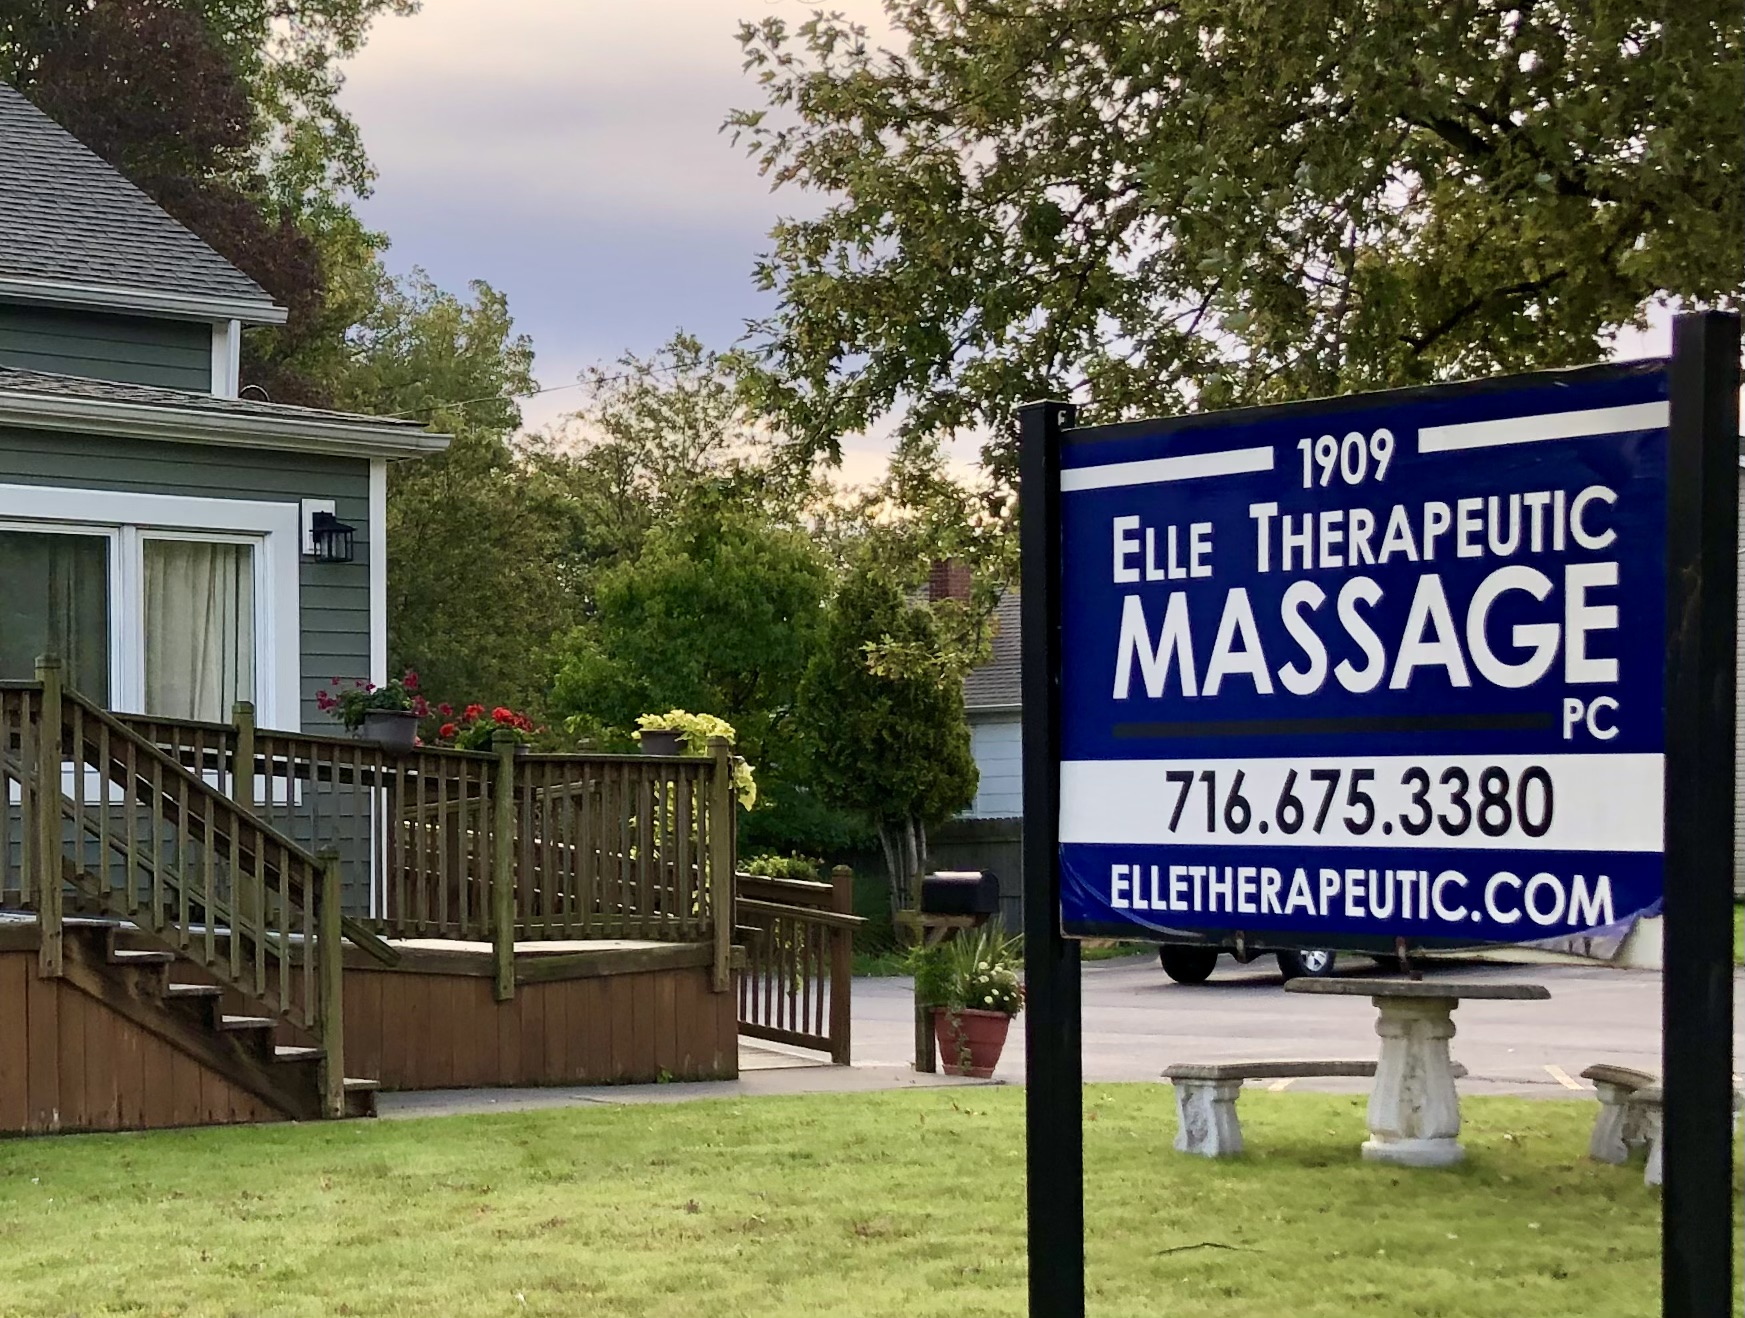 Elle Therapeutic Massage PC